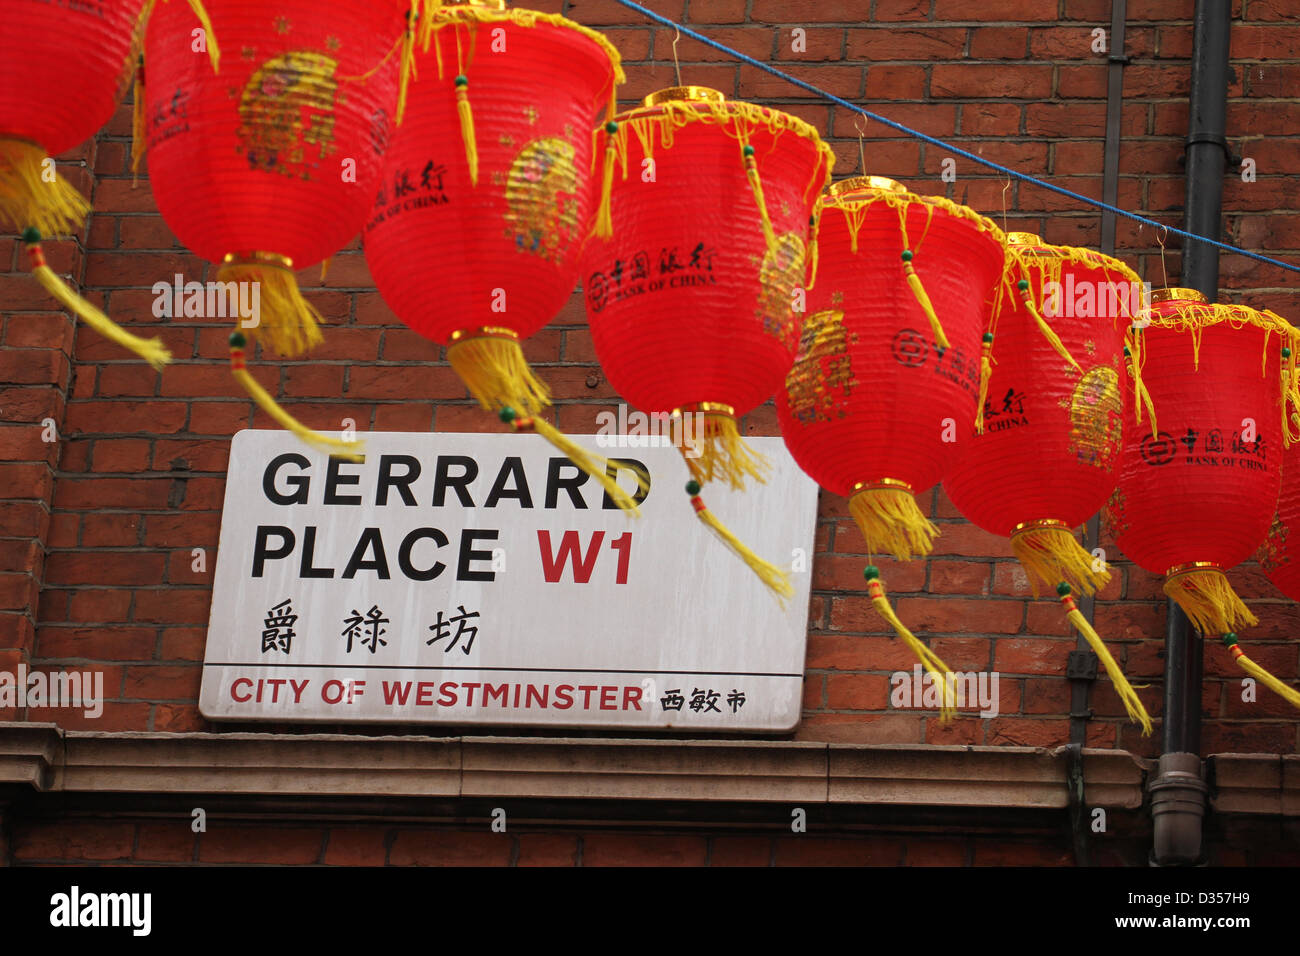 London,UK.10 fév, 2013. Vu les lanternes sur Gerrard Place W1 Banque D'Images